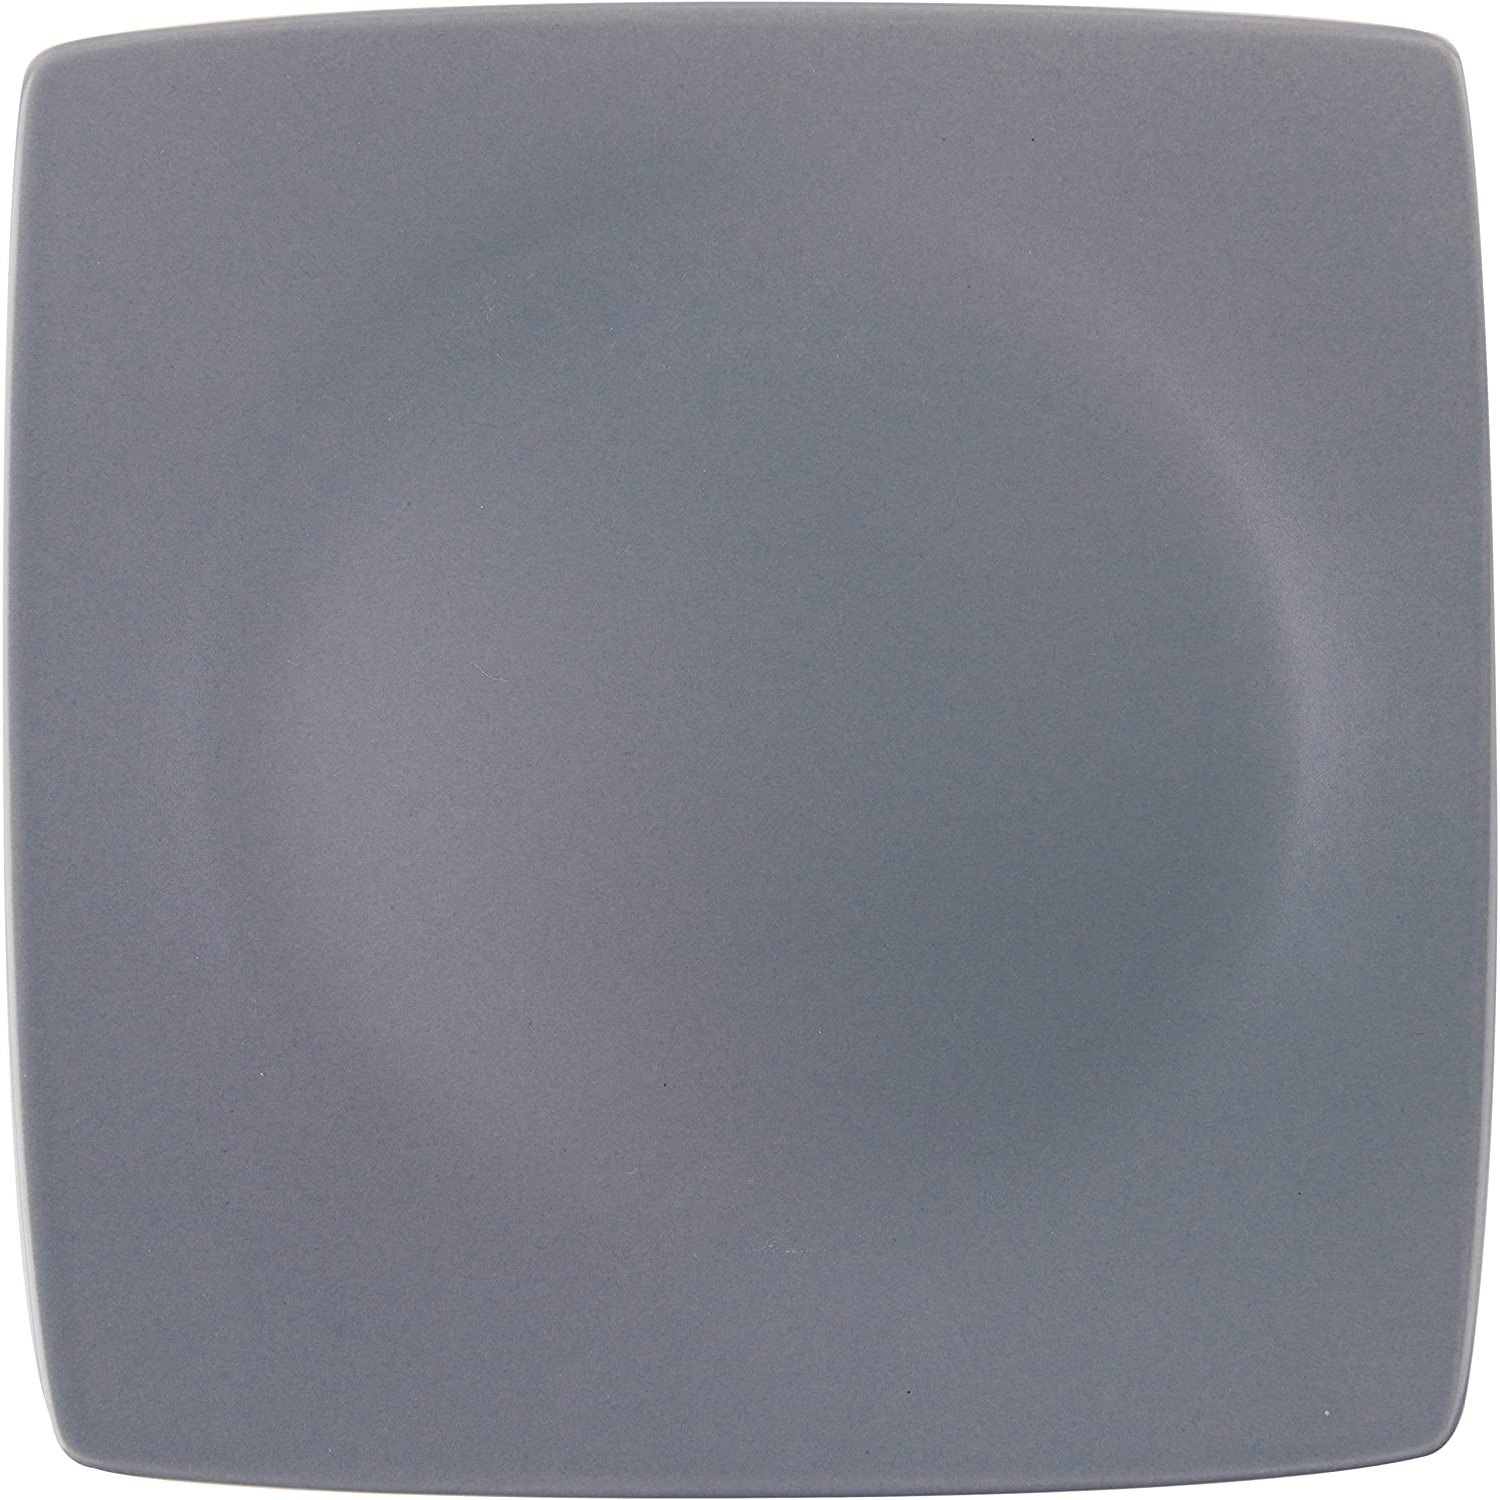 Excelsa Eclipse piatto piano ceramica Grigio cod.61562